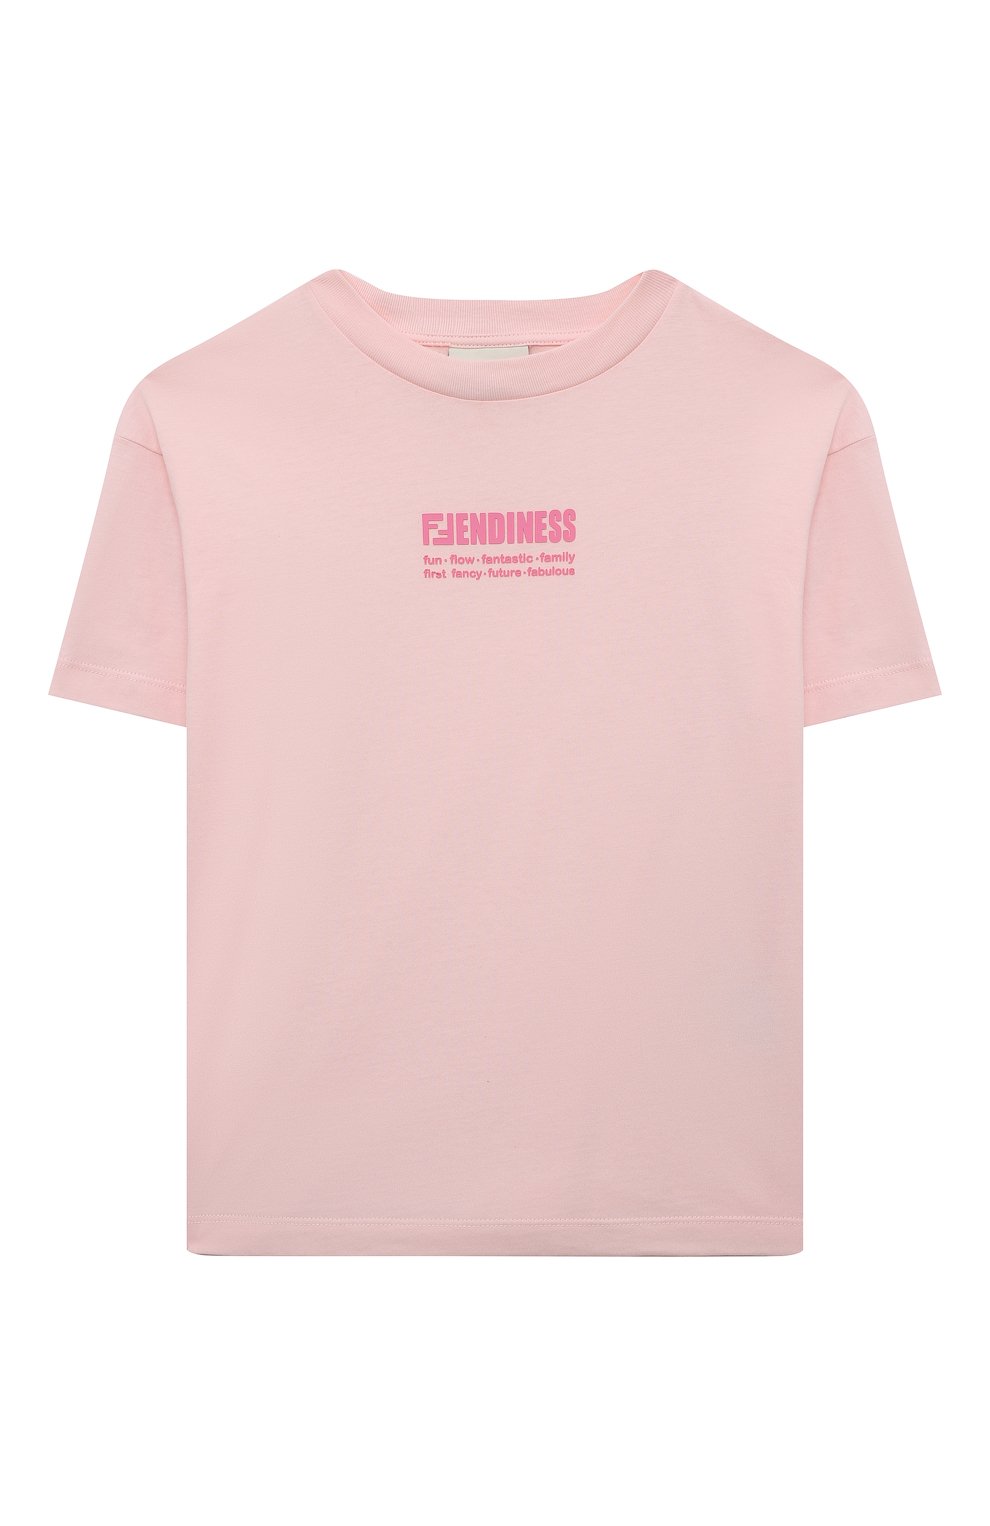 Футболки Fendi, Хлопковая футболка Fendi, Португалия, Розовый, Хлопок: 100%;, 12693778  - купить